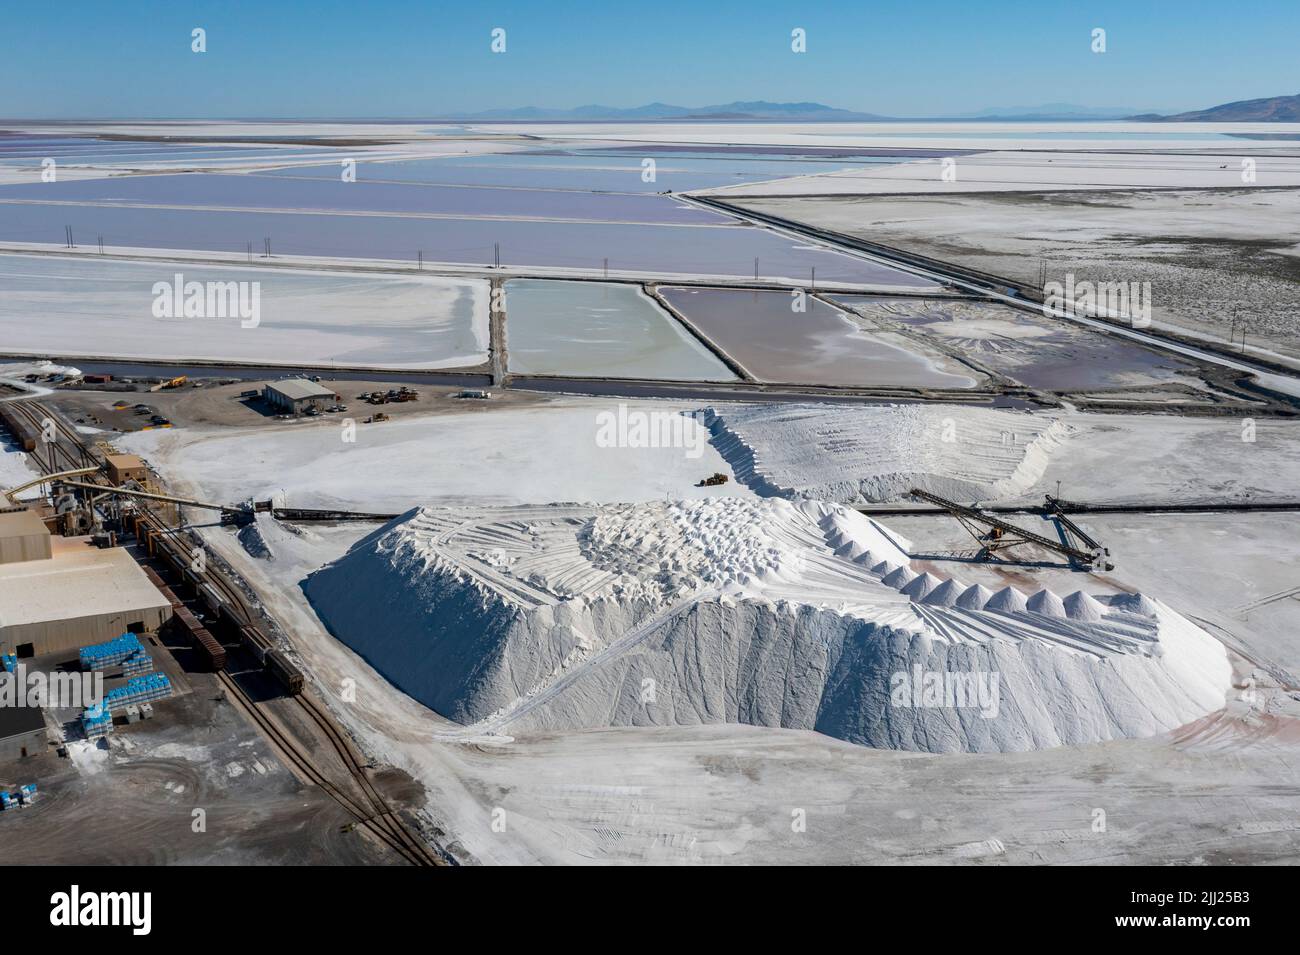 Grantsville, Utah - die Cargill-Salzanlage, in der Salz durch das Aufschlagen von Sole in flachen Verdampfungsteichen am Rande des Great Salt Lake produziert wird. Stockfoto